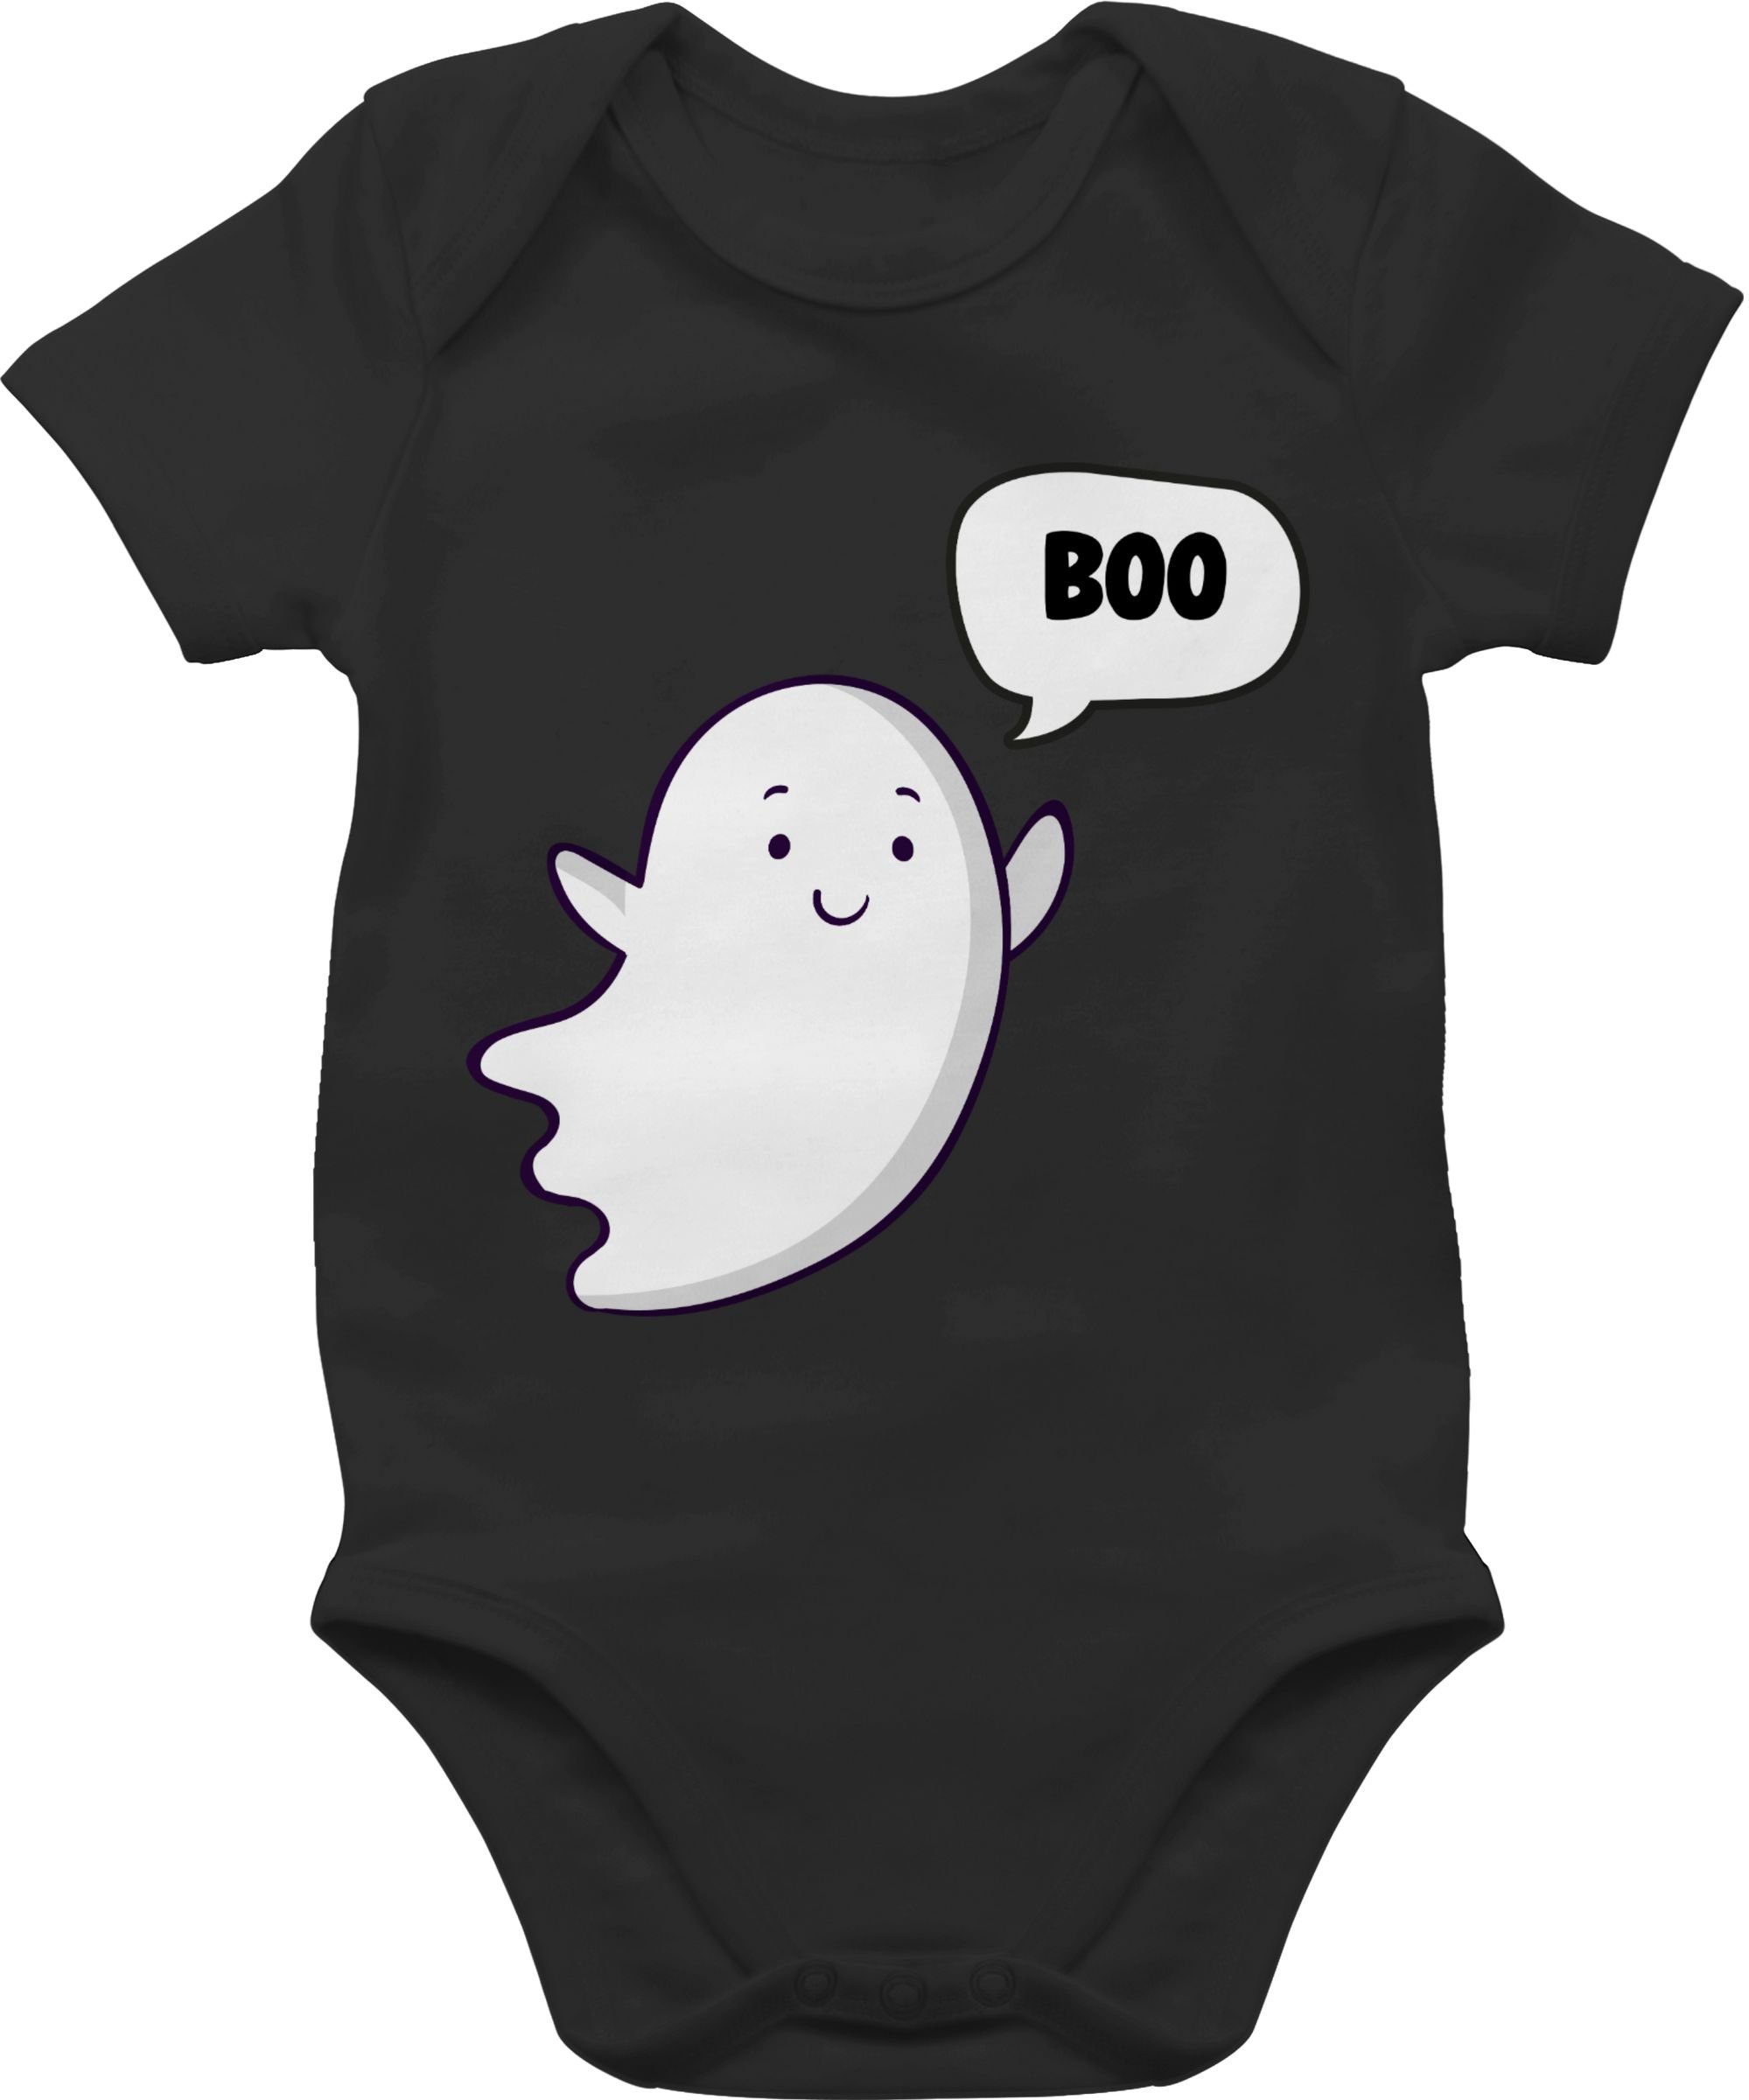 Shirtracer Shirtbody Süßer kleiner Geist Geister Gespenst Ghost Halloween Kostüme für Baby 1 Schwarz